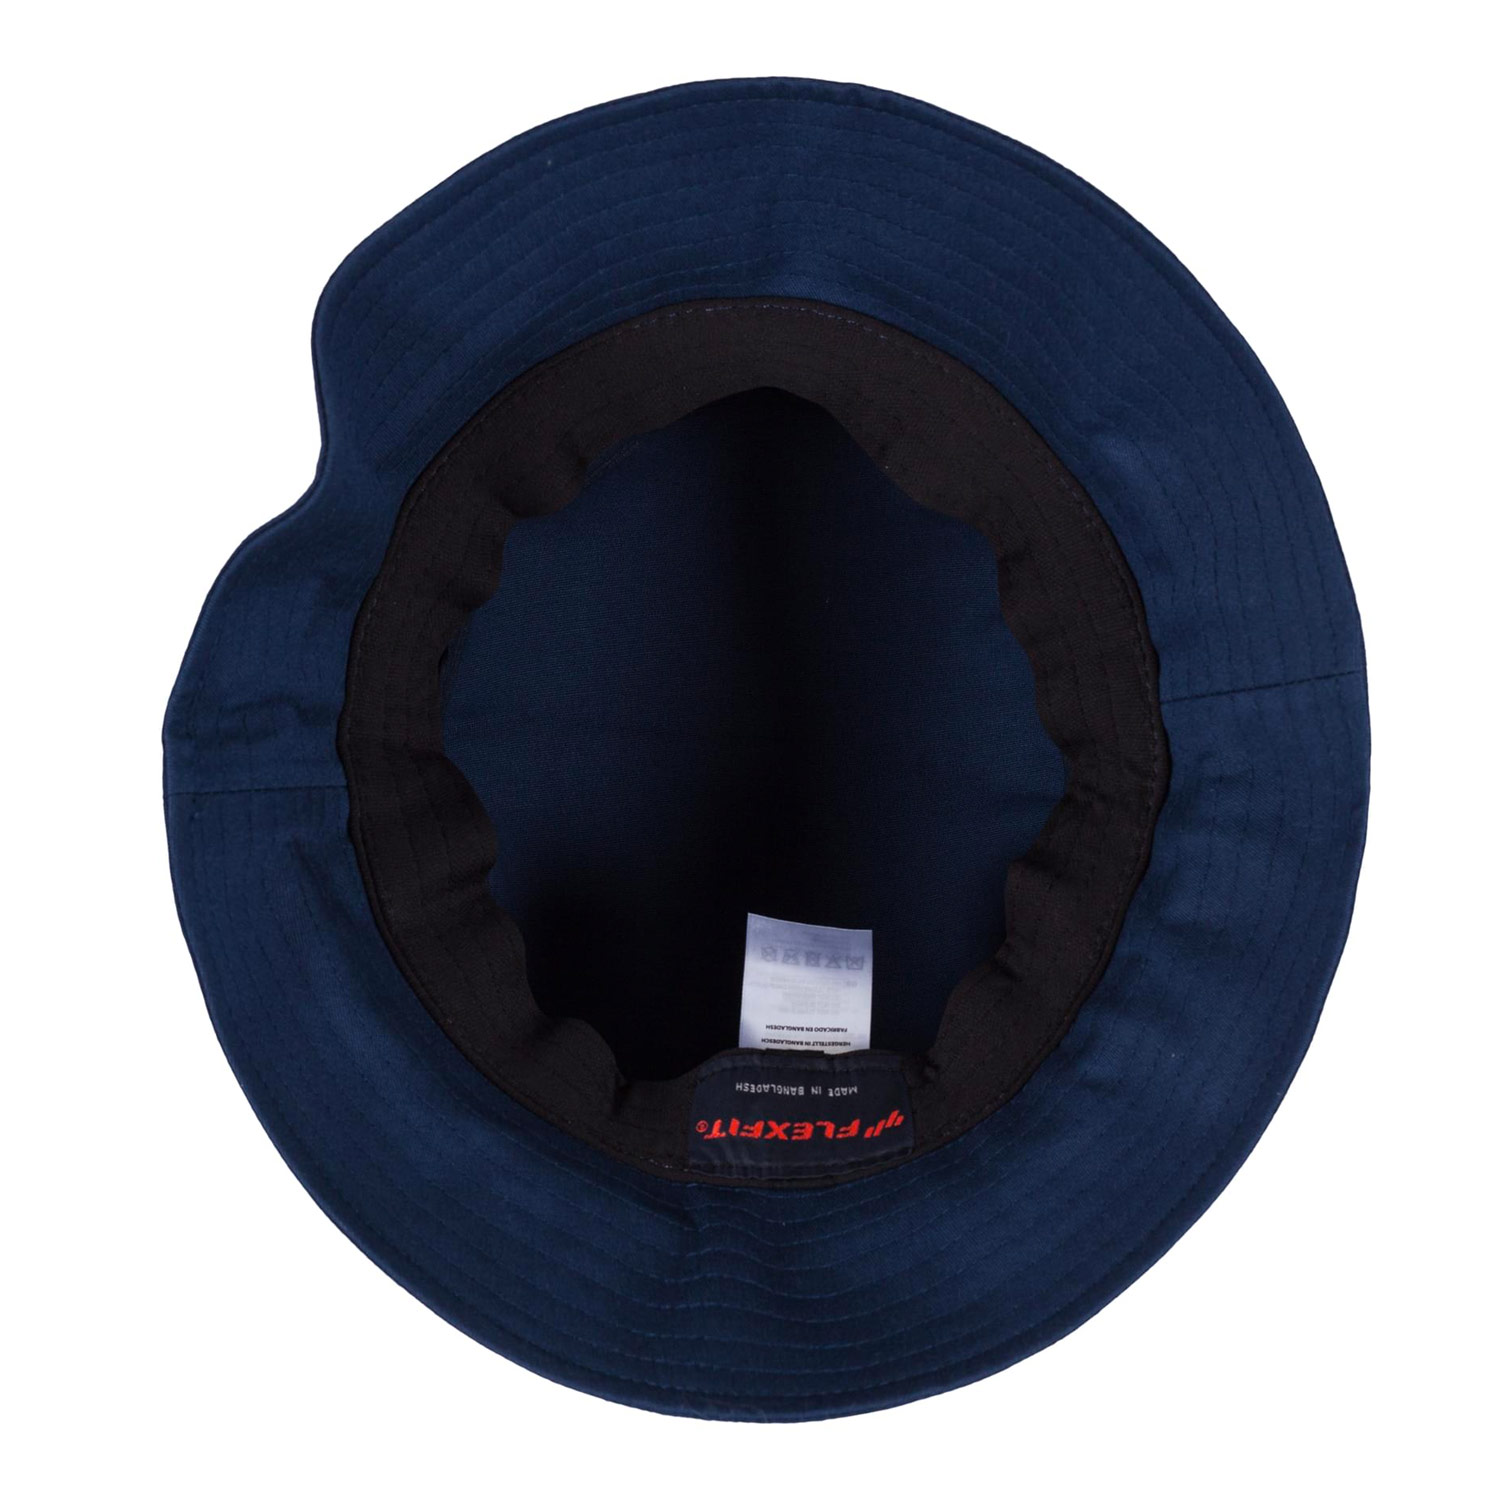 Flexfit Bucket Hat Cotton Twill (navy)